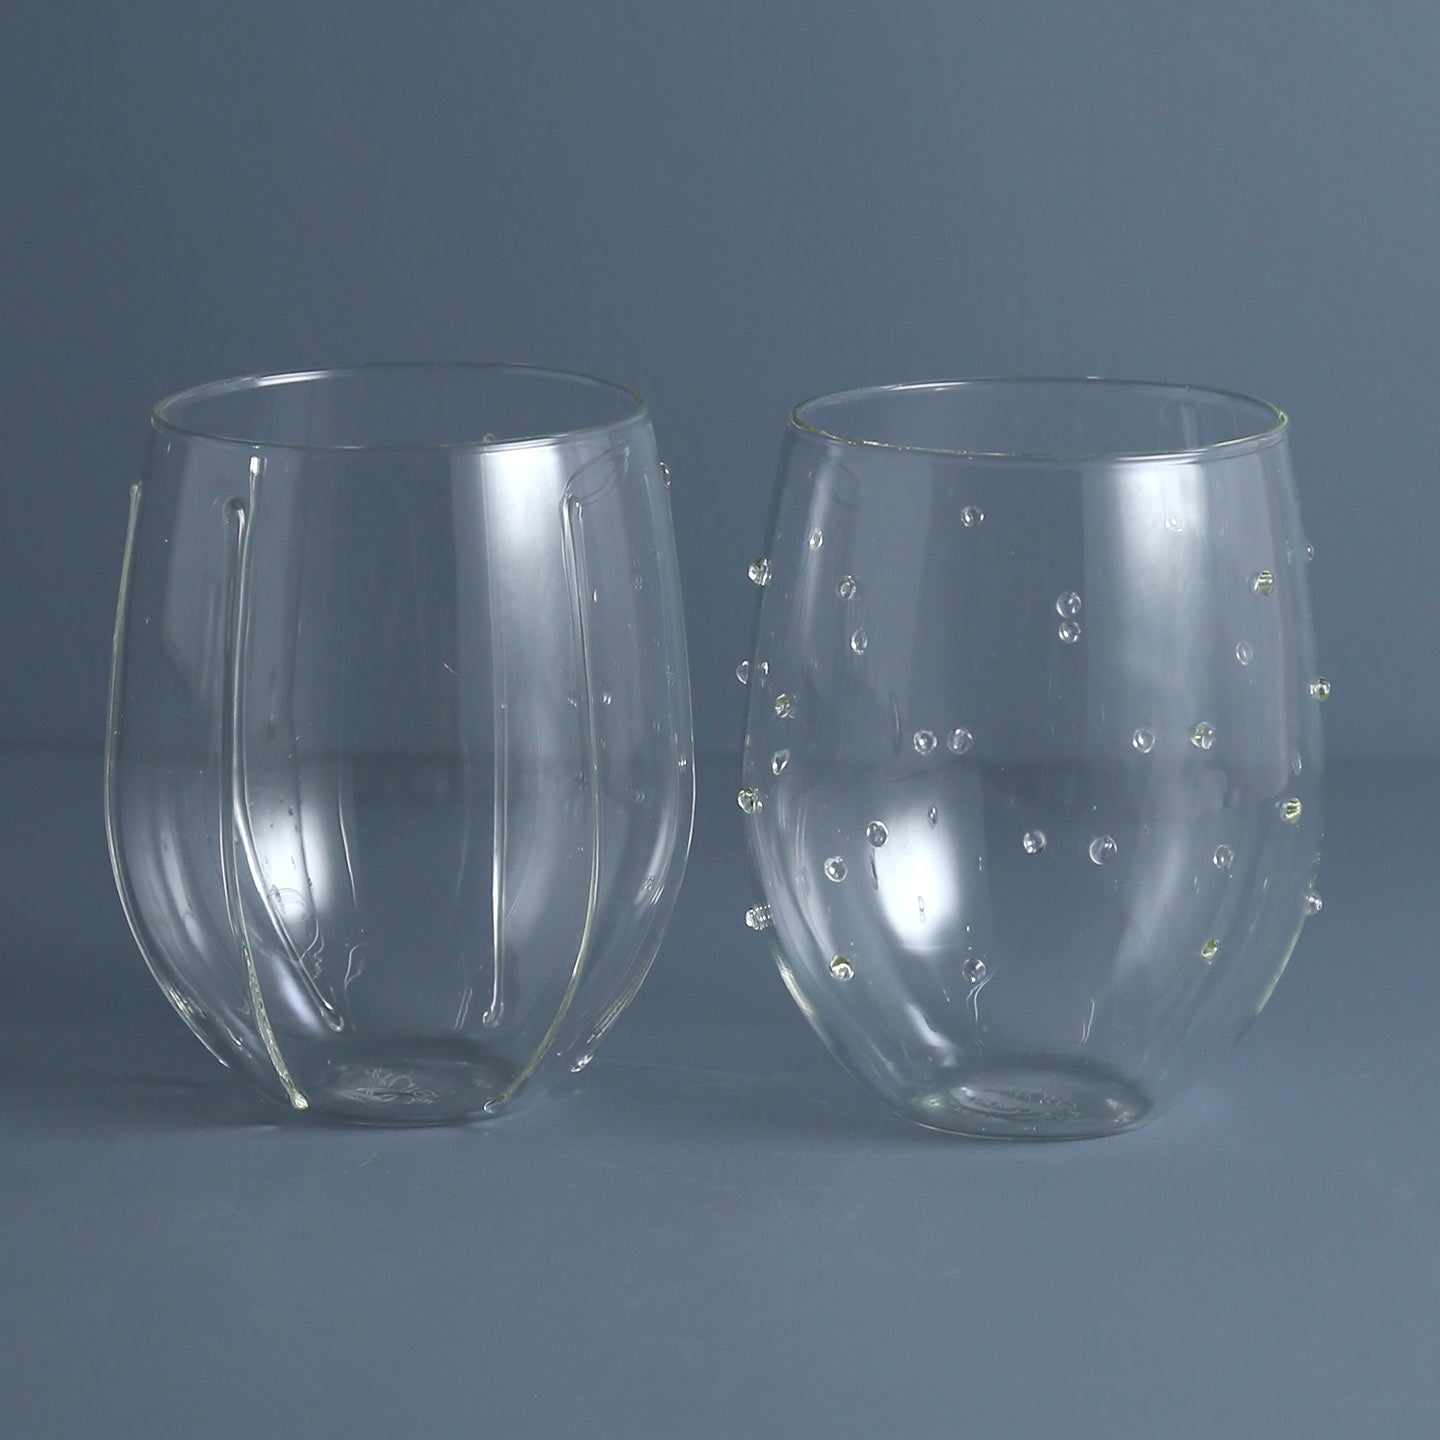 Endra Drinking Glass / 16 oz + sett – One Mercantile / Sett